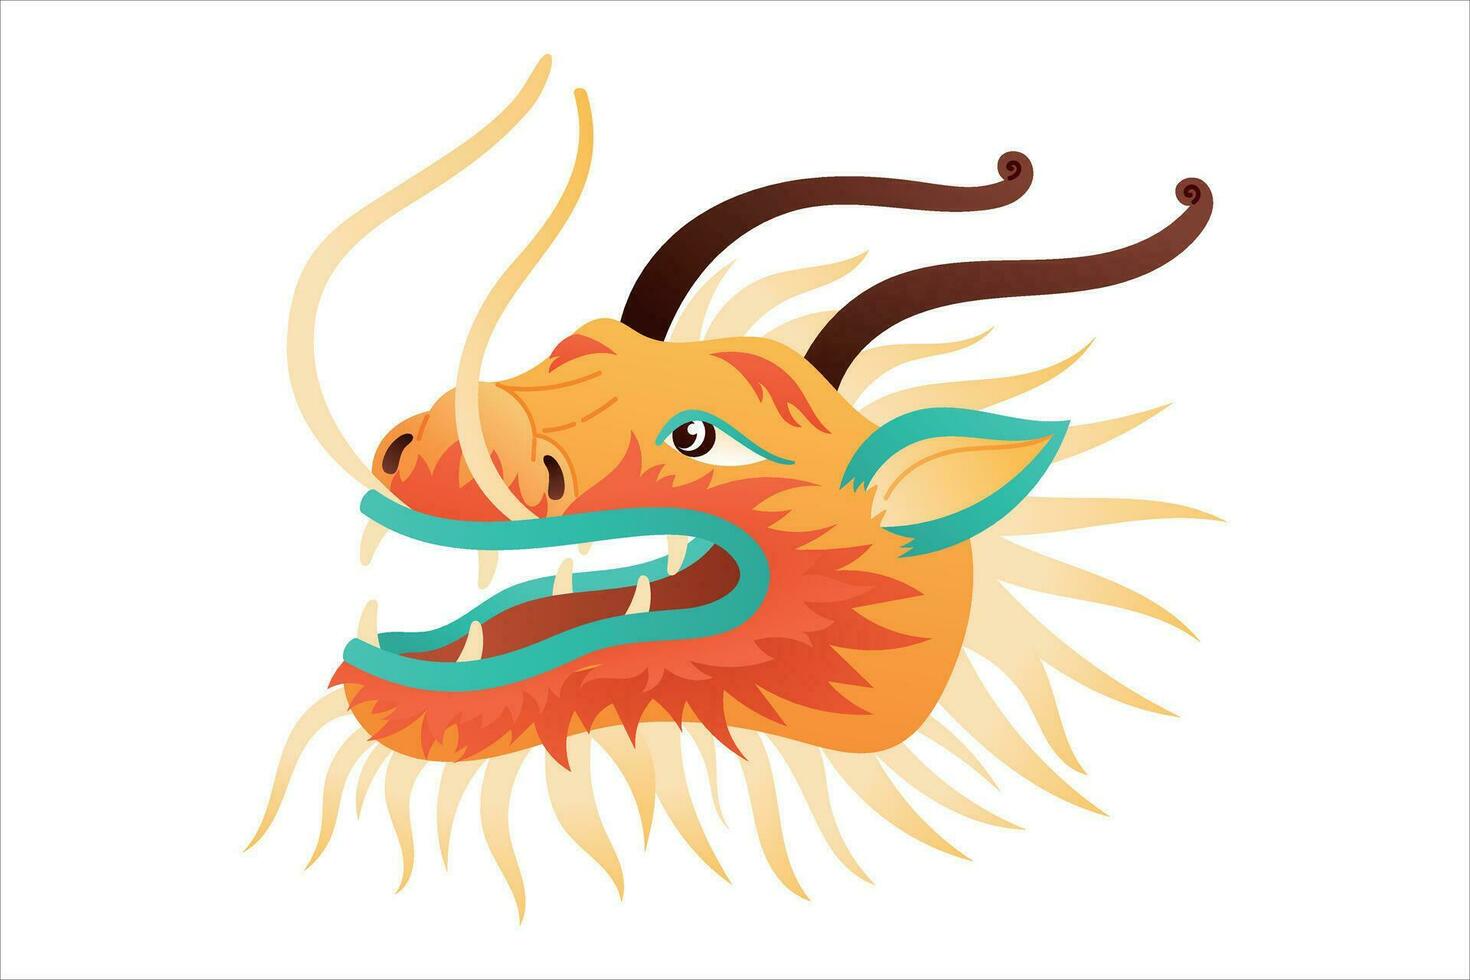 Karikatur Kopf von ein Märchen Drachen. Vektor isoliert Illustration von traditionell asiatisch Chinesisch Charakter.